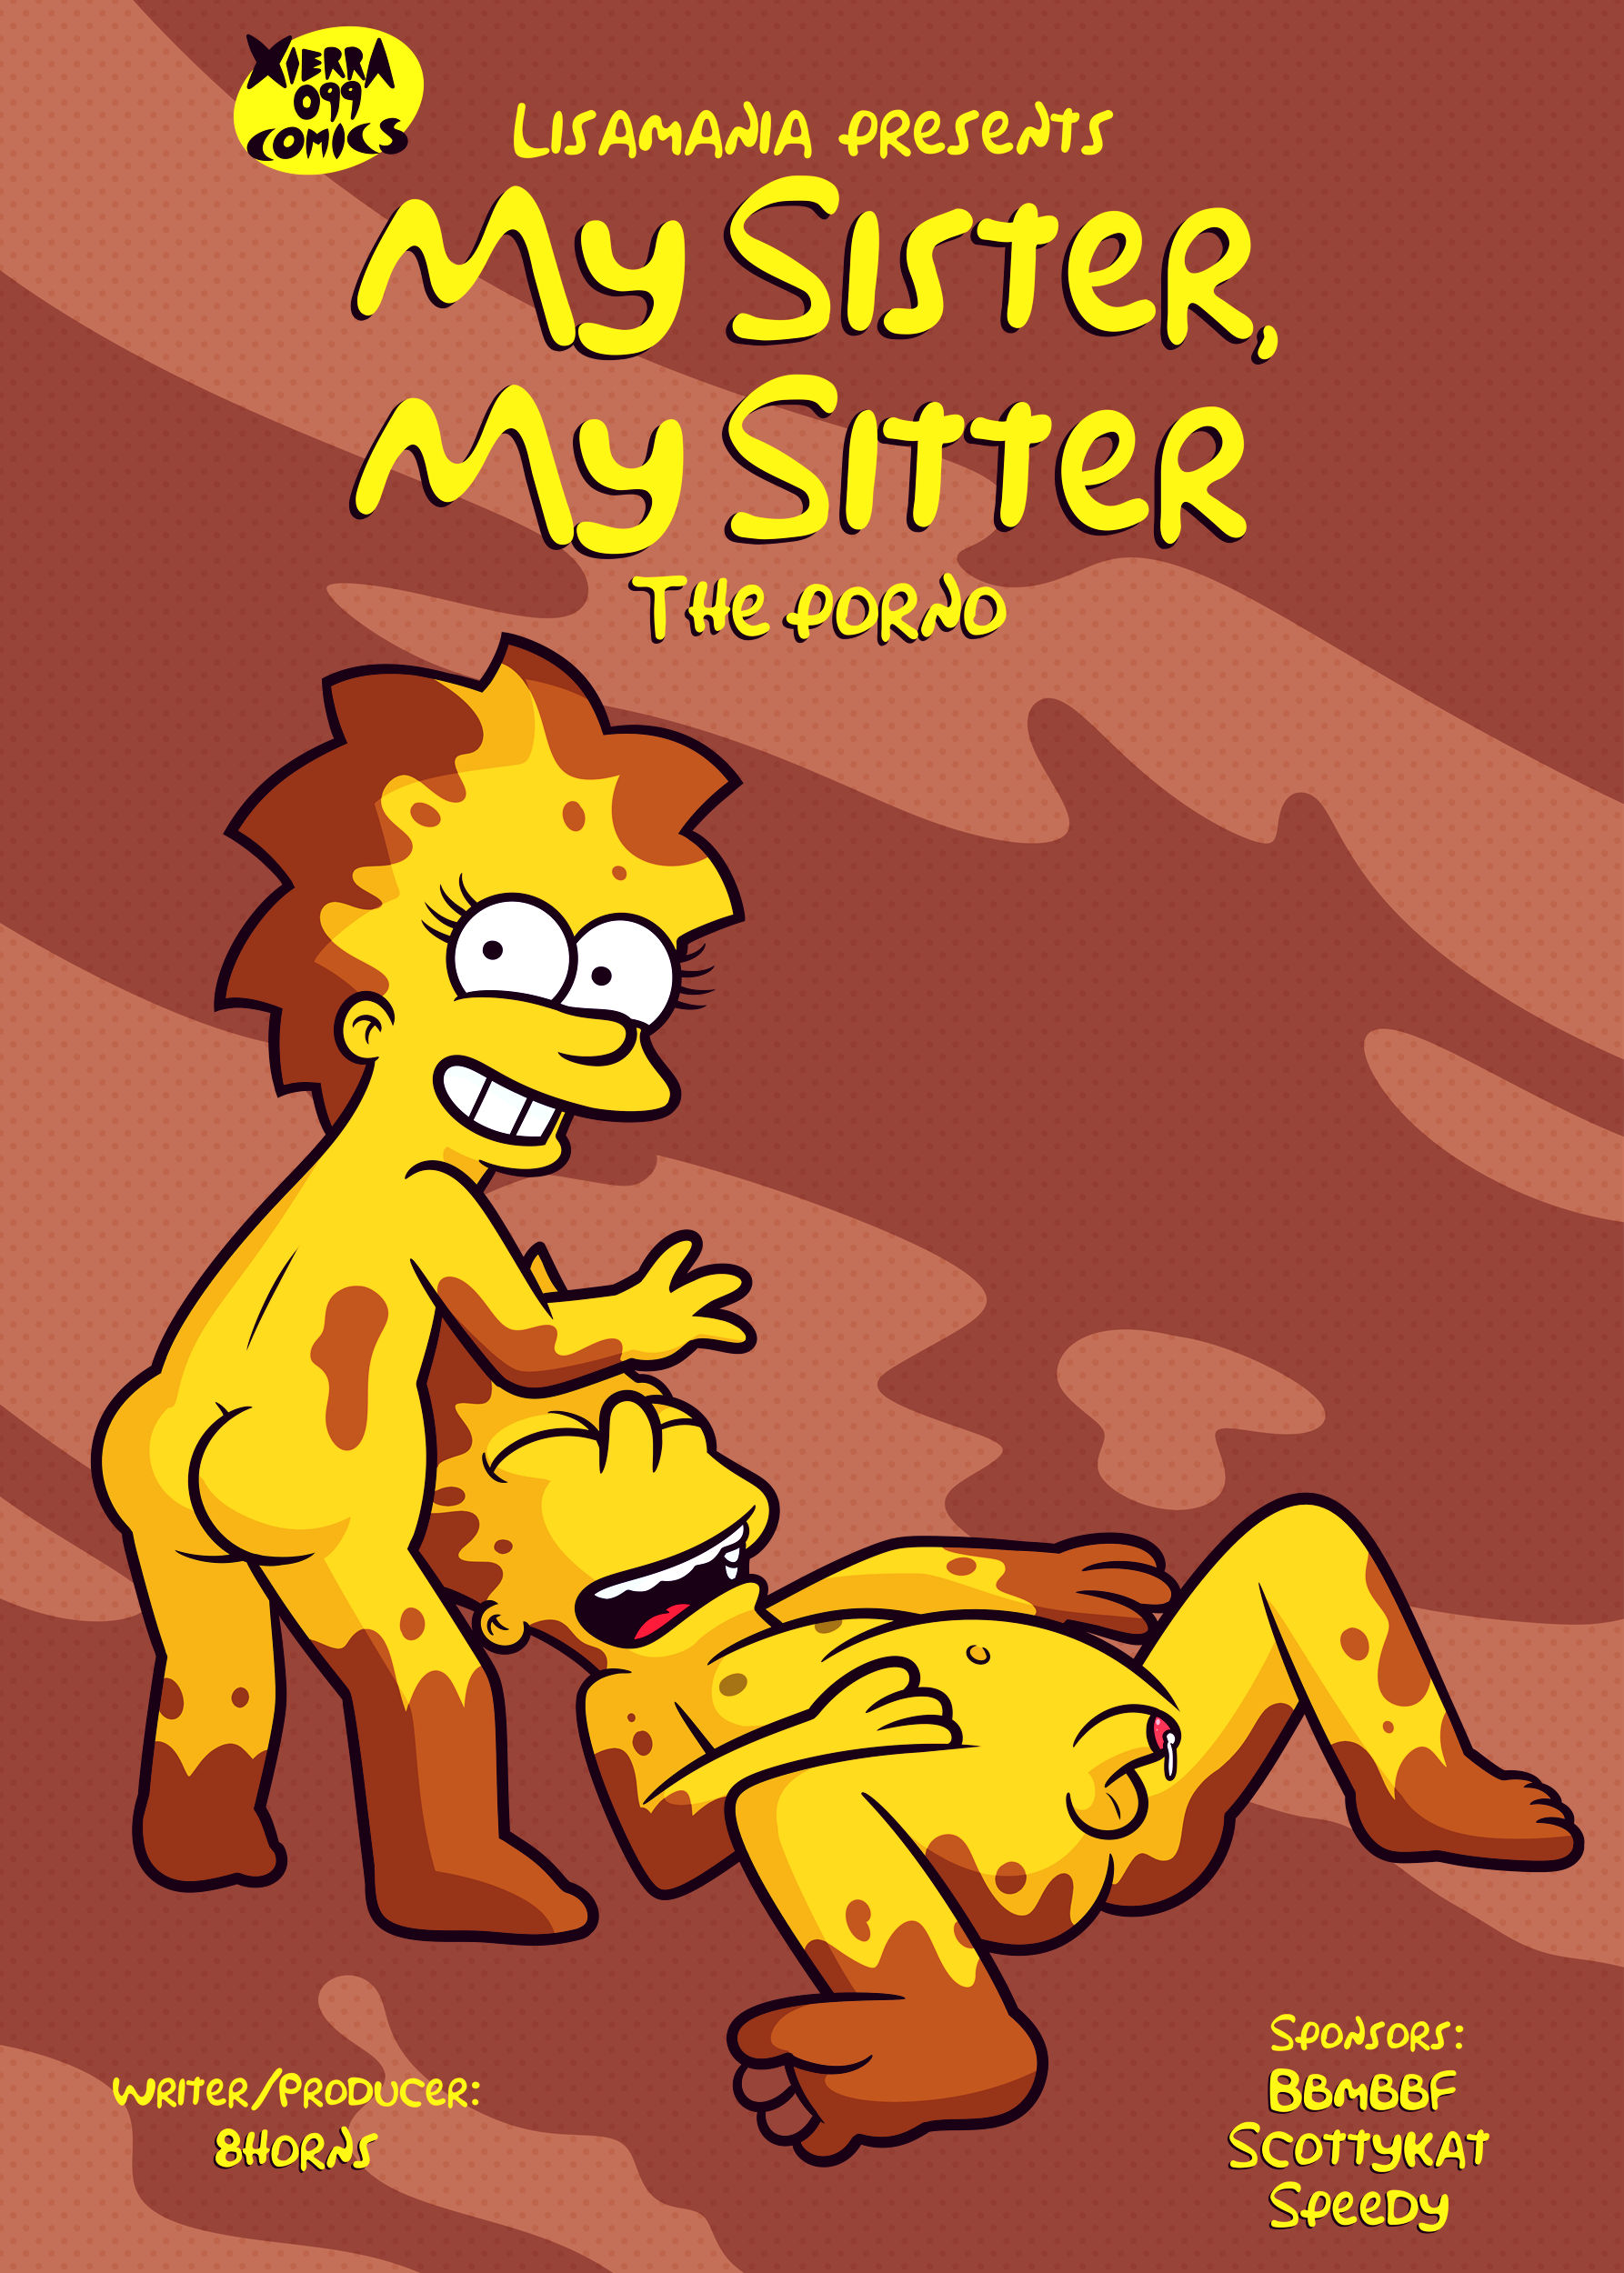 Bart and lisa comic porn